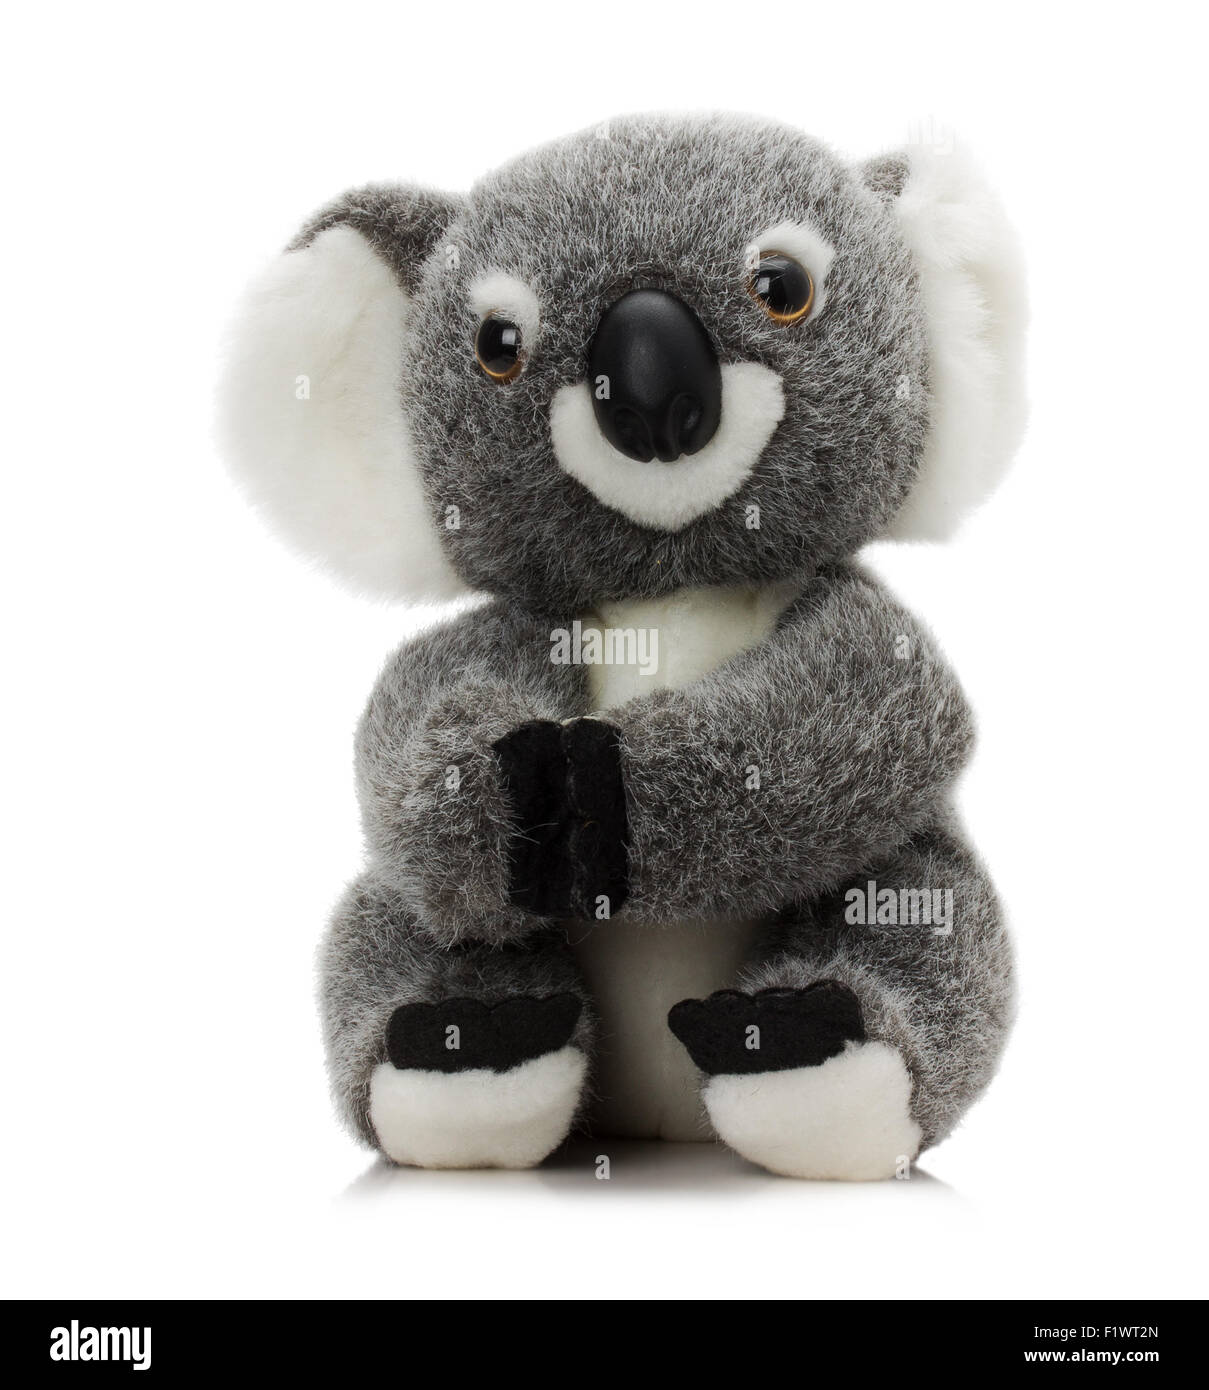 Plüsch Koala Spielzeug isoliert auf einem weißen Hintergrund. Stockfoto